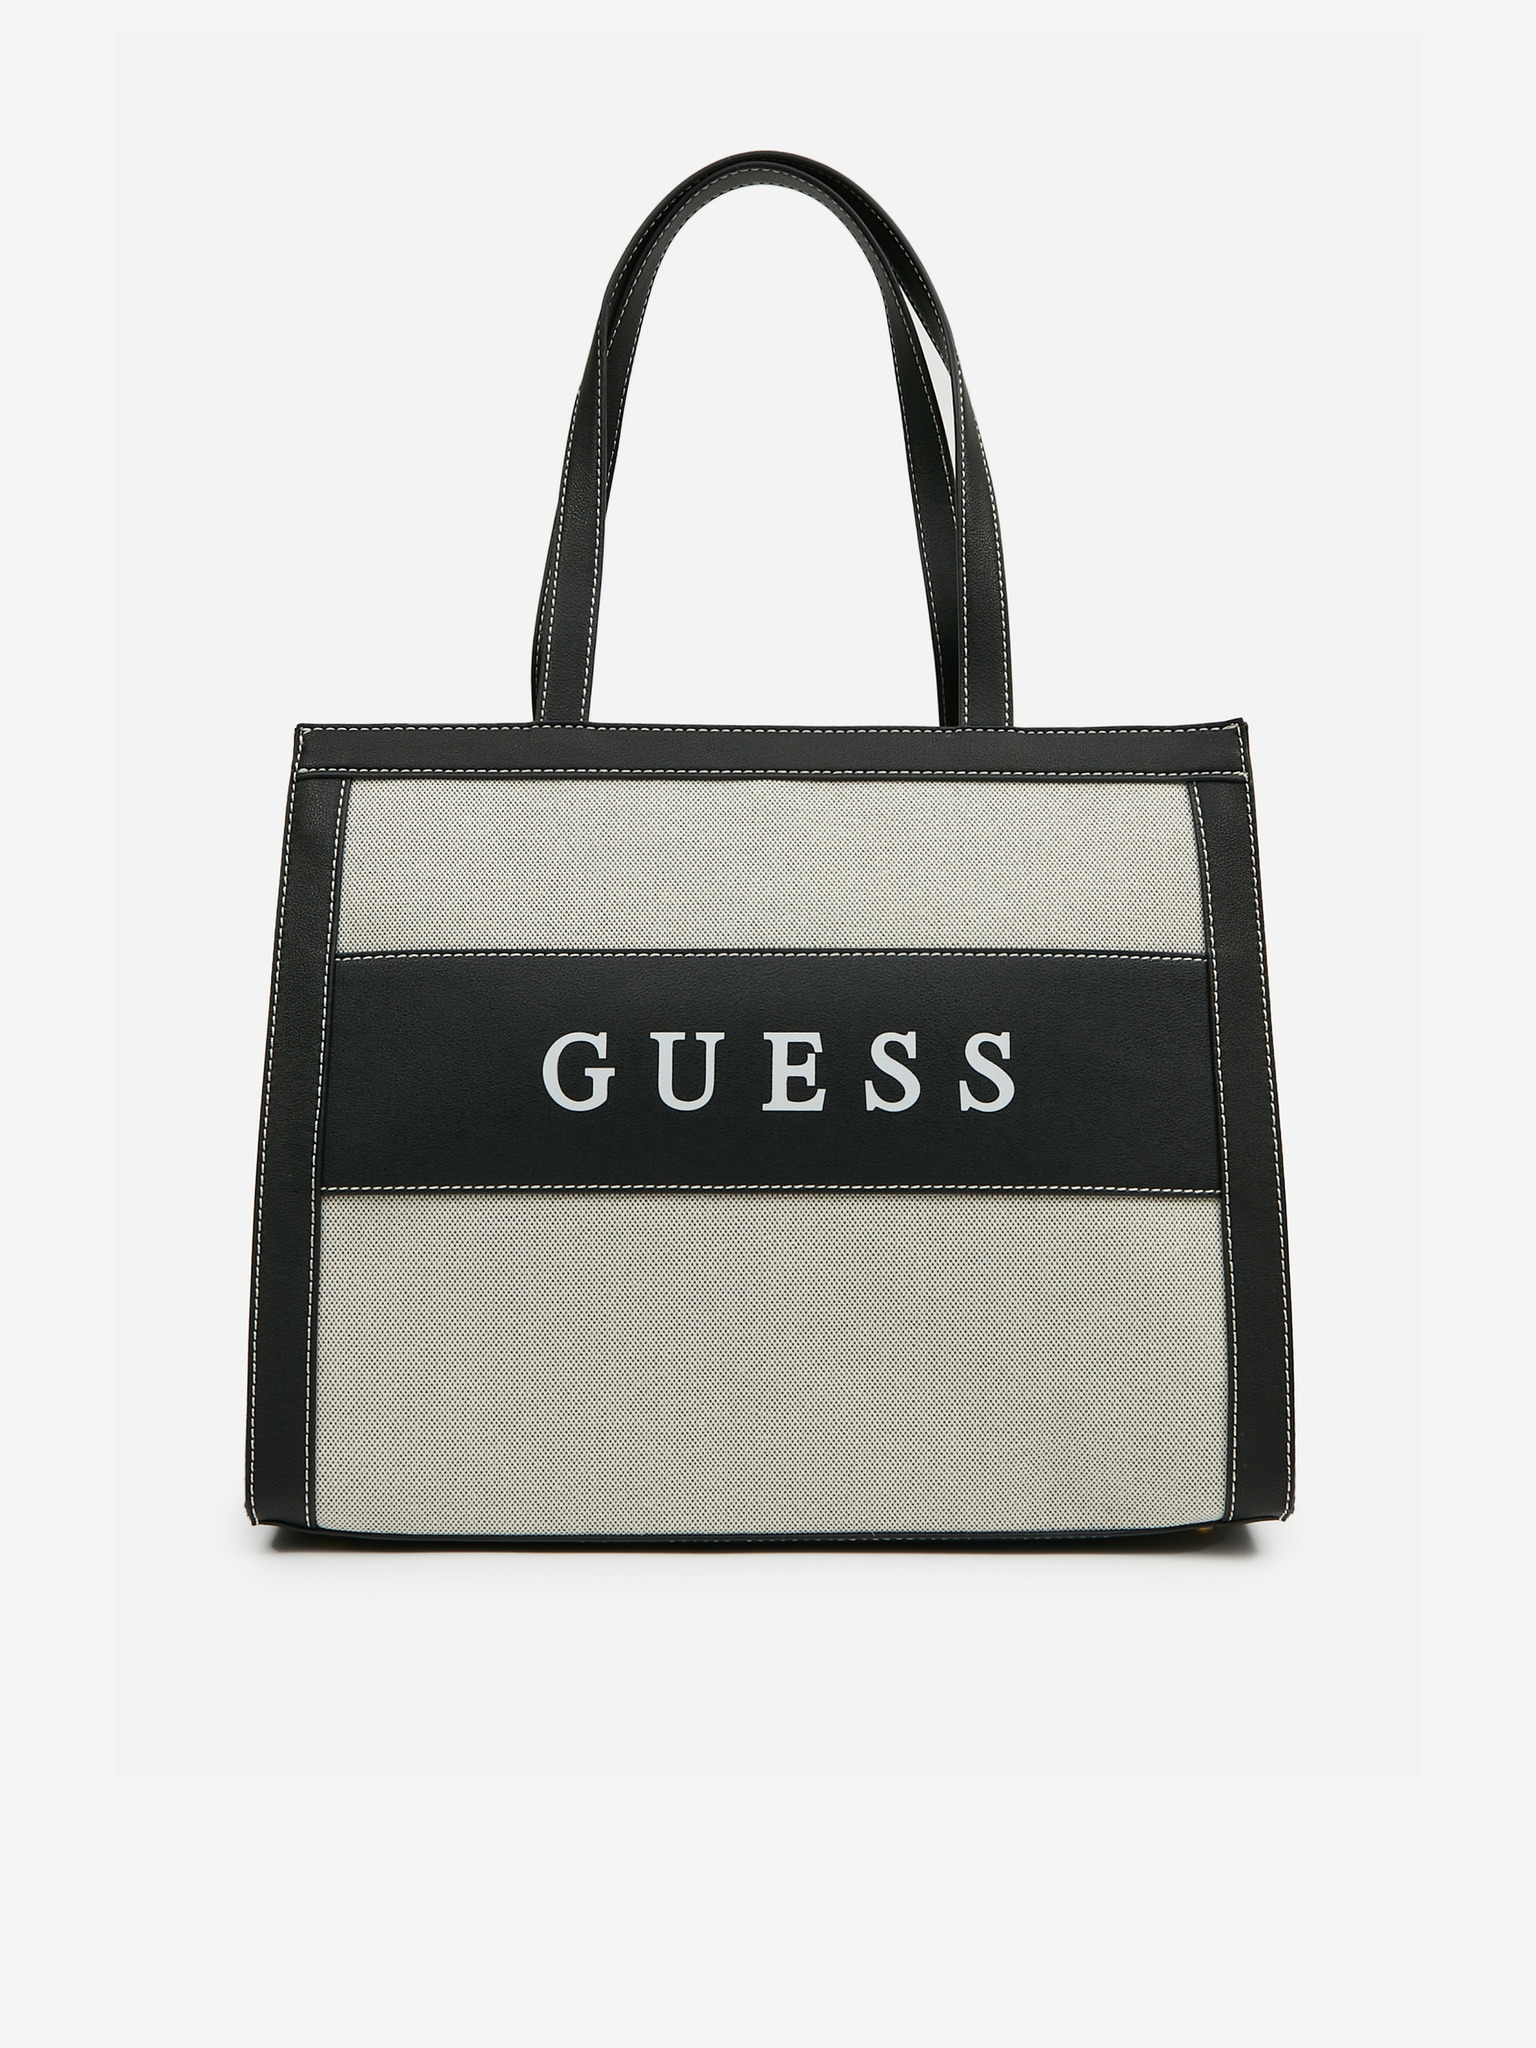 Guess Handbags Image Editing Campaign